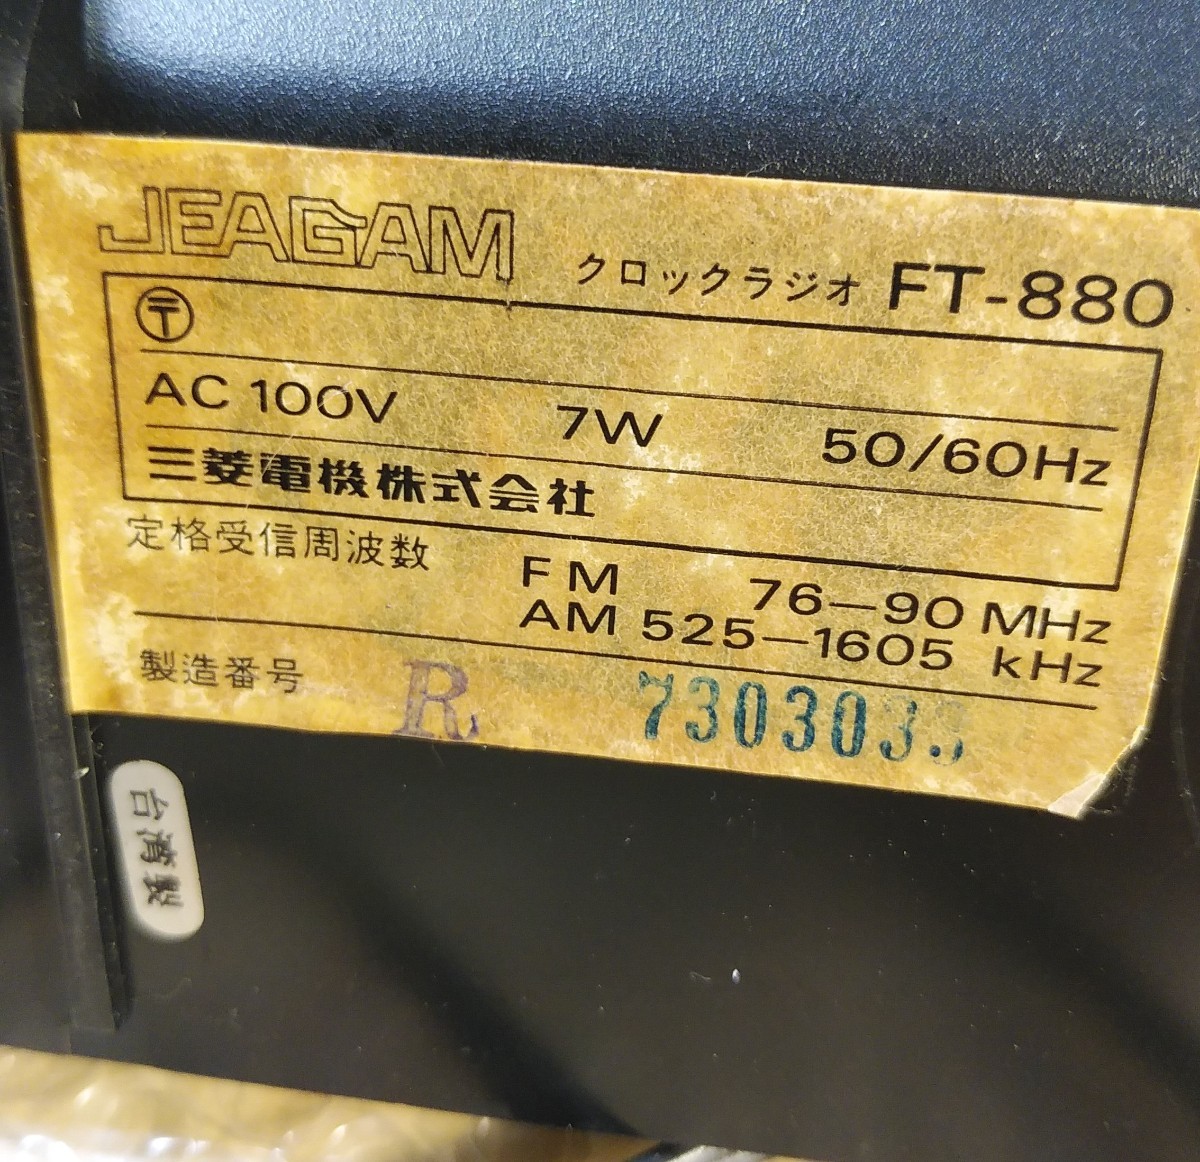 【レアもの】三菱電機カレンダークロックラジオ JEAGAM FT-880【昭和レトロ】_画像6